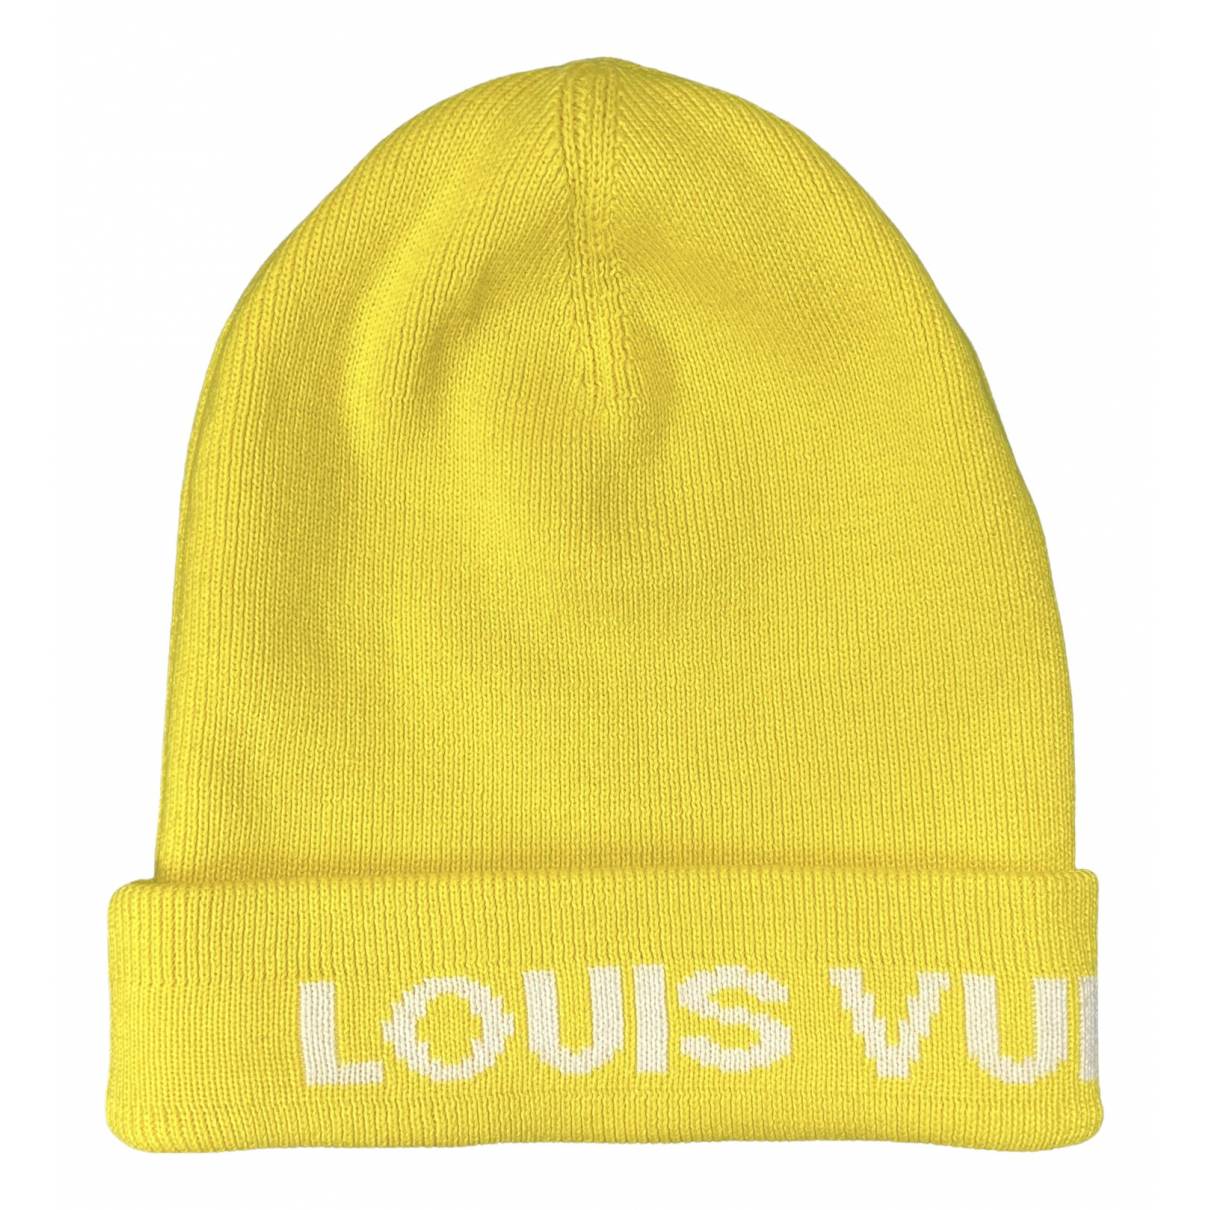 Louis Vuitton LV Monogram Bonnet Beanie Knit Cap Hat Wool Light